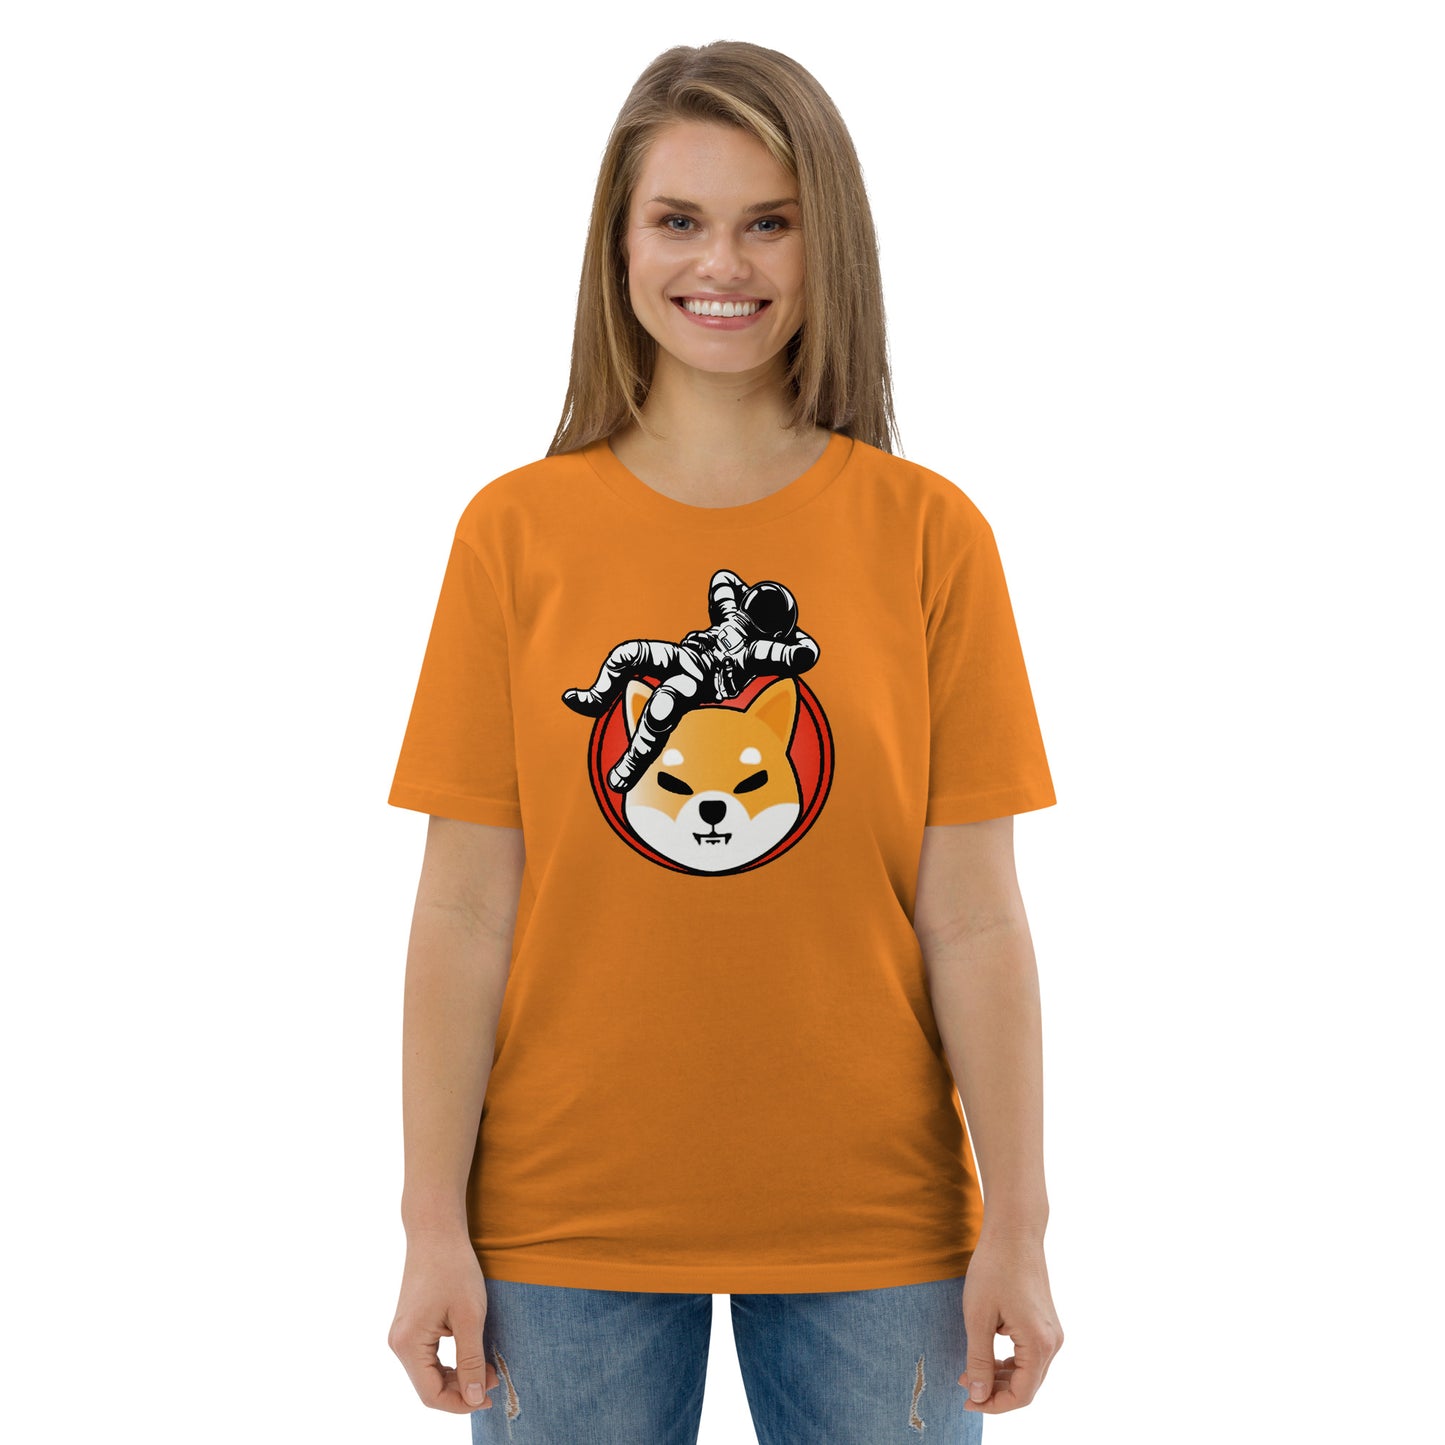 Shiba Inu To The Moon Women's Organic Cotton T-Shirt